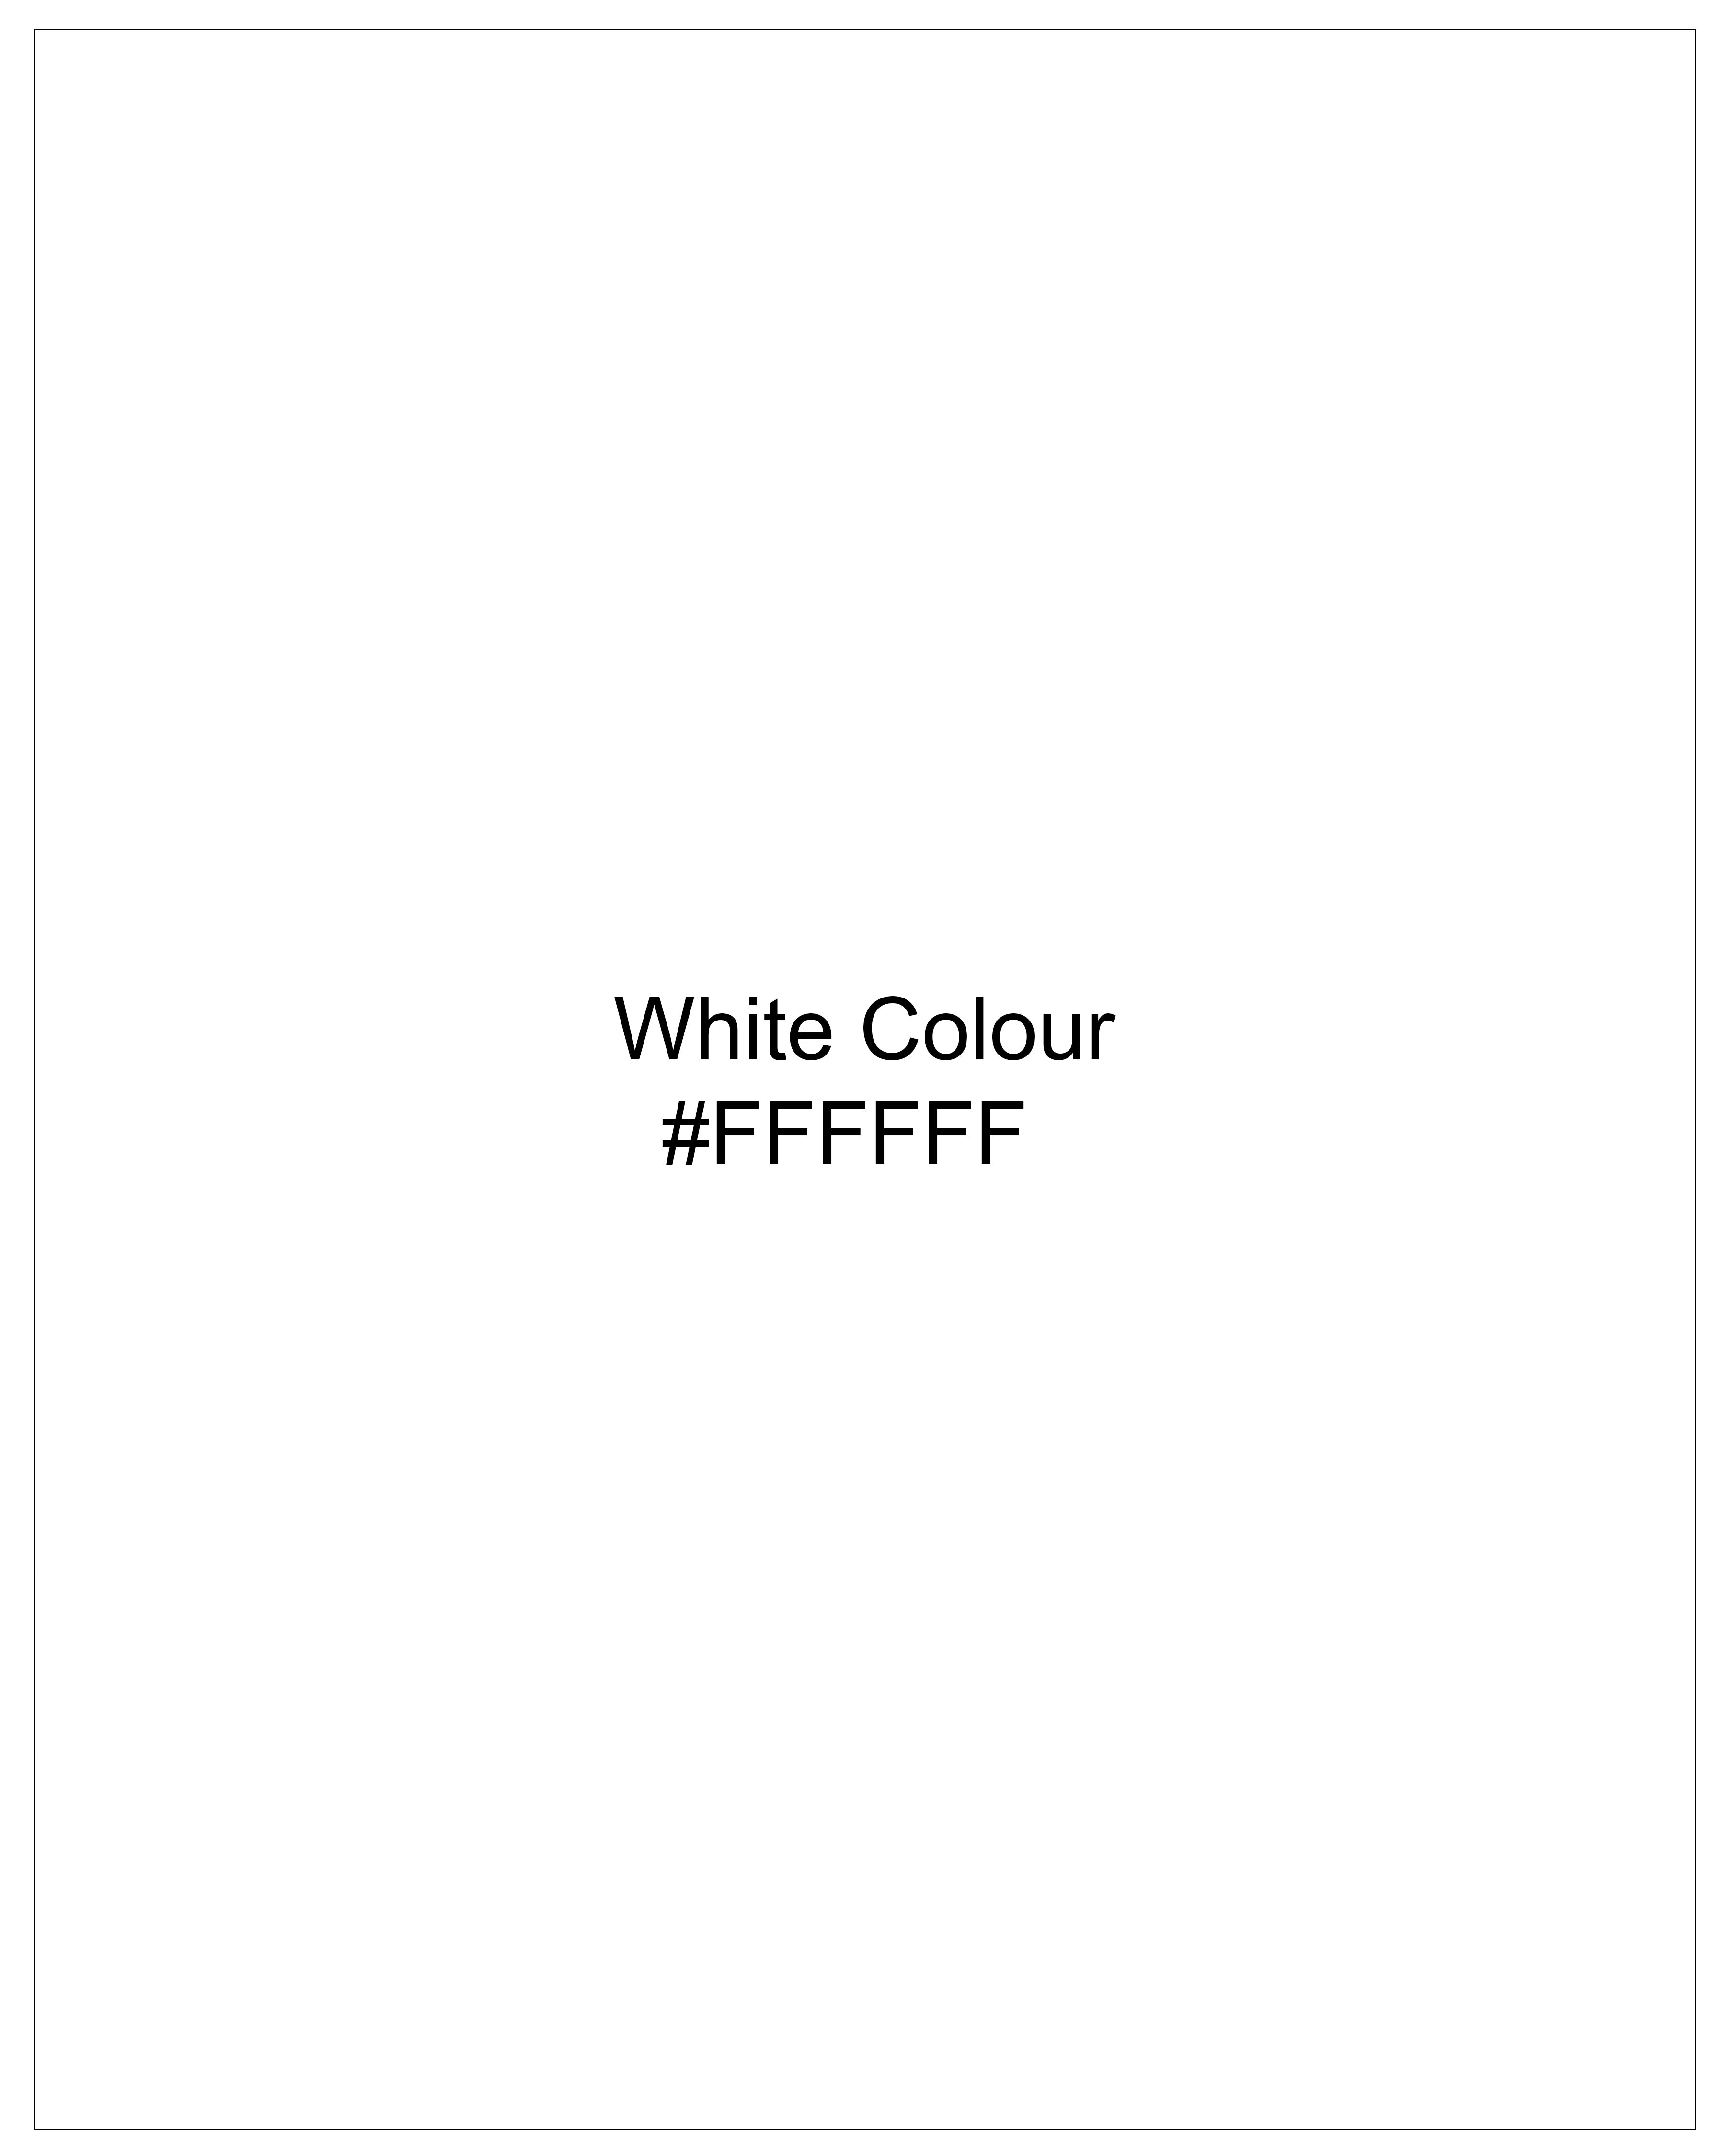 Bright White Dobby Textured Premium Giza Cotton Shirt 8992-CA-BLE-38, 8992-CA-BLE-H-38, 8992-CA-BLE-39, 8992-CA-BLE-H-39, 8992-CA-BLE-40, 8992-CA-BLE-H-40, 8992-CA-BLE-42, 8992-CA-BLE-H-42, 8992-CA-BLE-44, 8992-CA-BLE-H-44, 8992-CA-BLE-46, 8992-CA-BLE-H-46, 8992-CA-BLE-48, 8992-CA-BLE-H-48, 8992-CA-BLE-50, 8992-CA-BLE-H-50, 8992-CA-BLE-52, 8992-CA-BLE-H-52